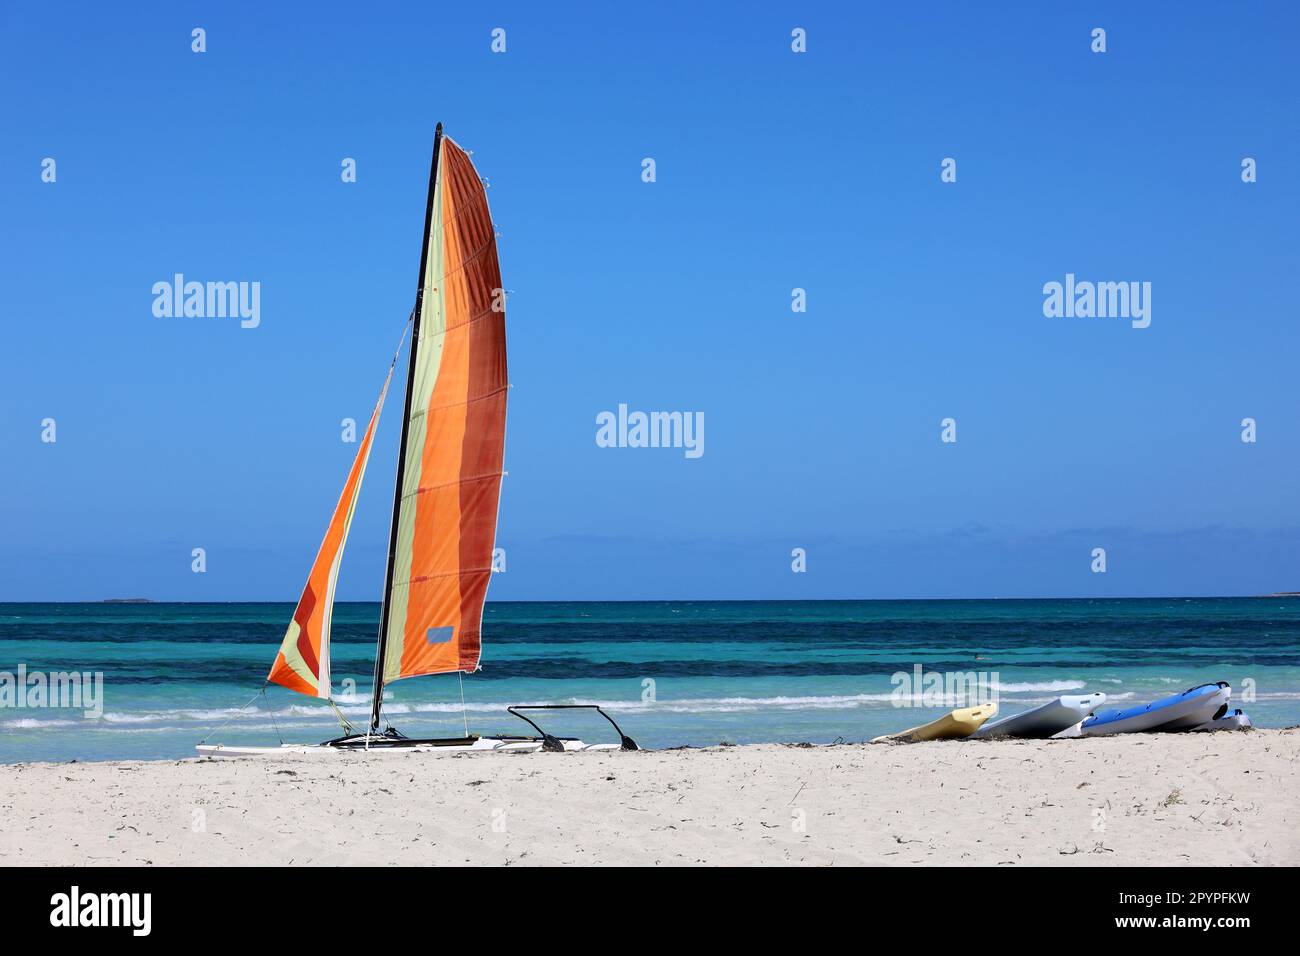 Catamarán velero en una arena sobre fondo azul del mar. Deportes acuáticos en la playa de verano Foto de stock